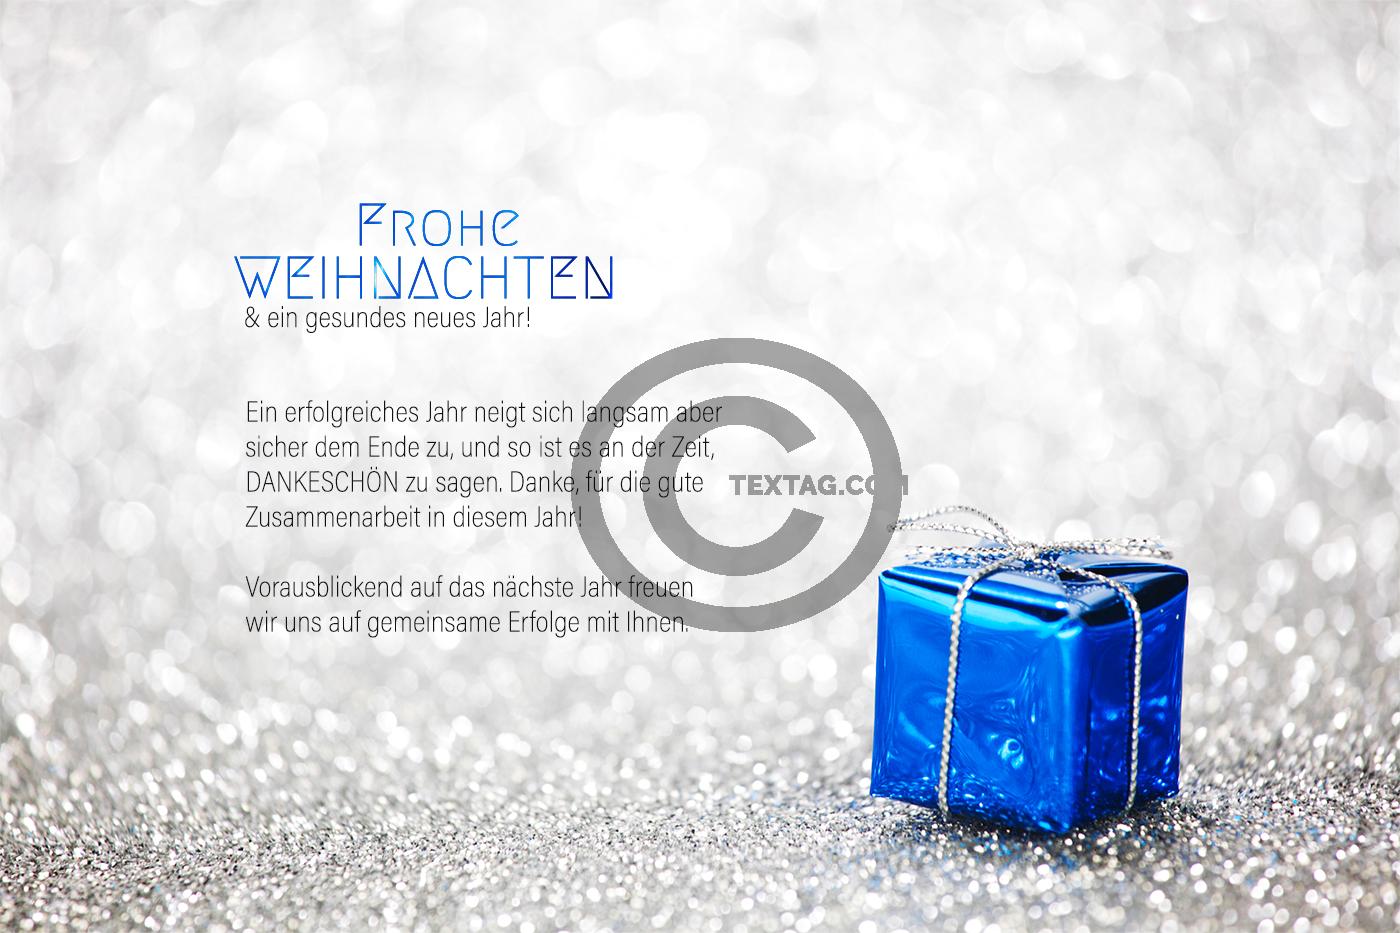 stylische Weihnachts E-Card für Kunden in Blau & Silber, ohne Werbung, mit Spruch (940) 